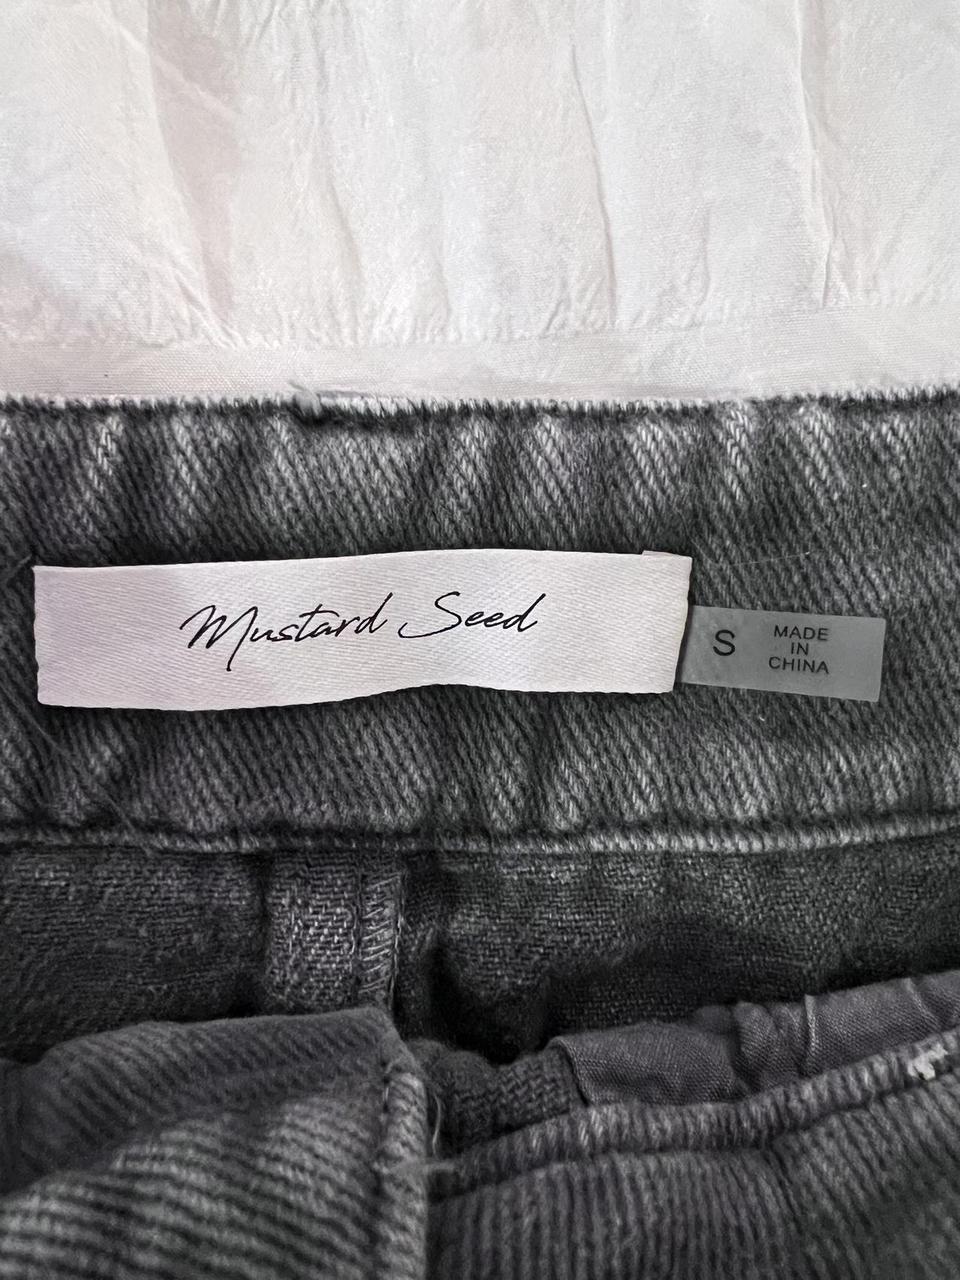 Mustard Seed black wash jean mini skirt. Size small.... - Depop